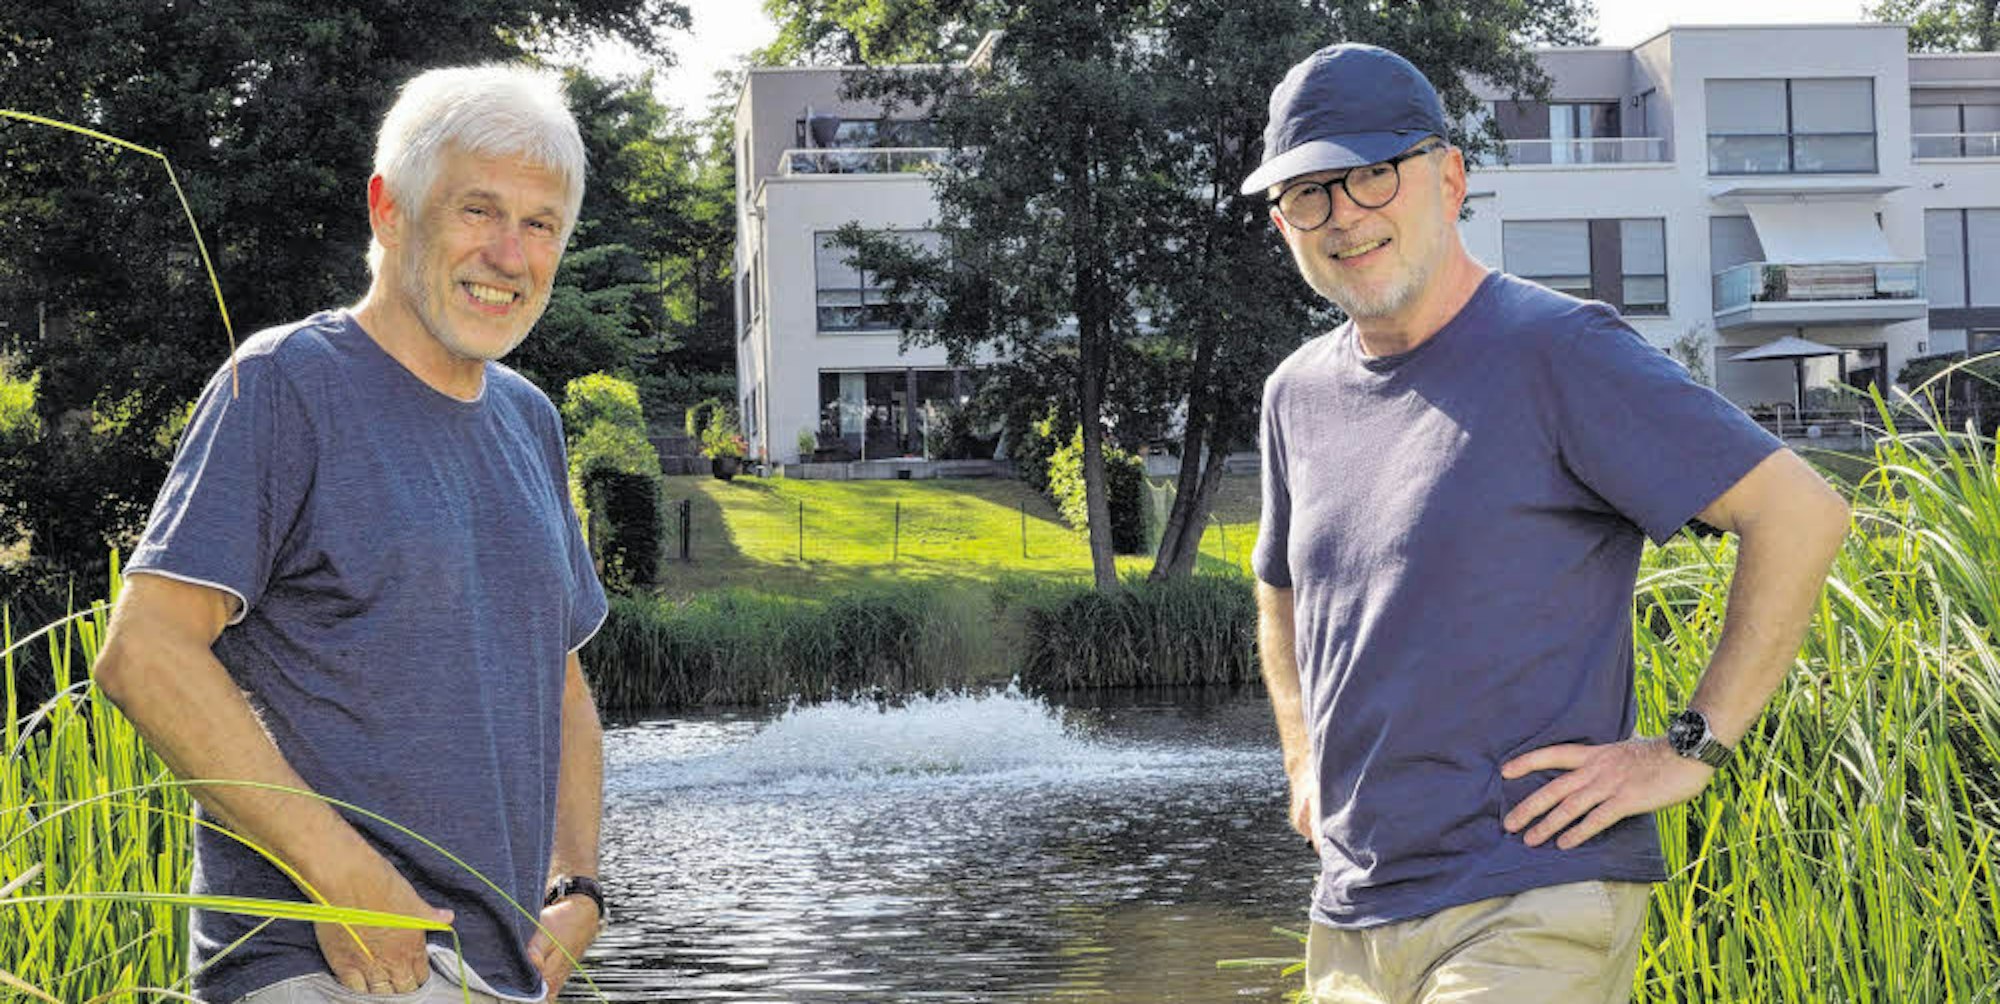 Die Sauerstoffpumpe im Teich wirbelt Wasser hoch. Claus Braun (l.) und Jürgen Spannagel gehören zum Team der Anwohner, die für den Betrieb sorgen.